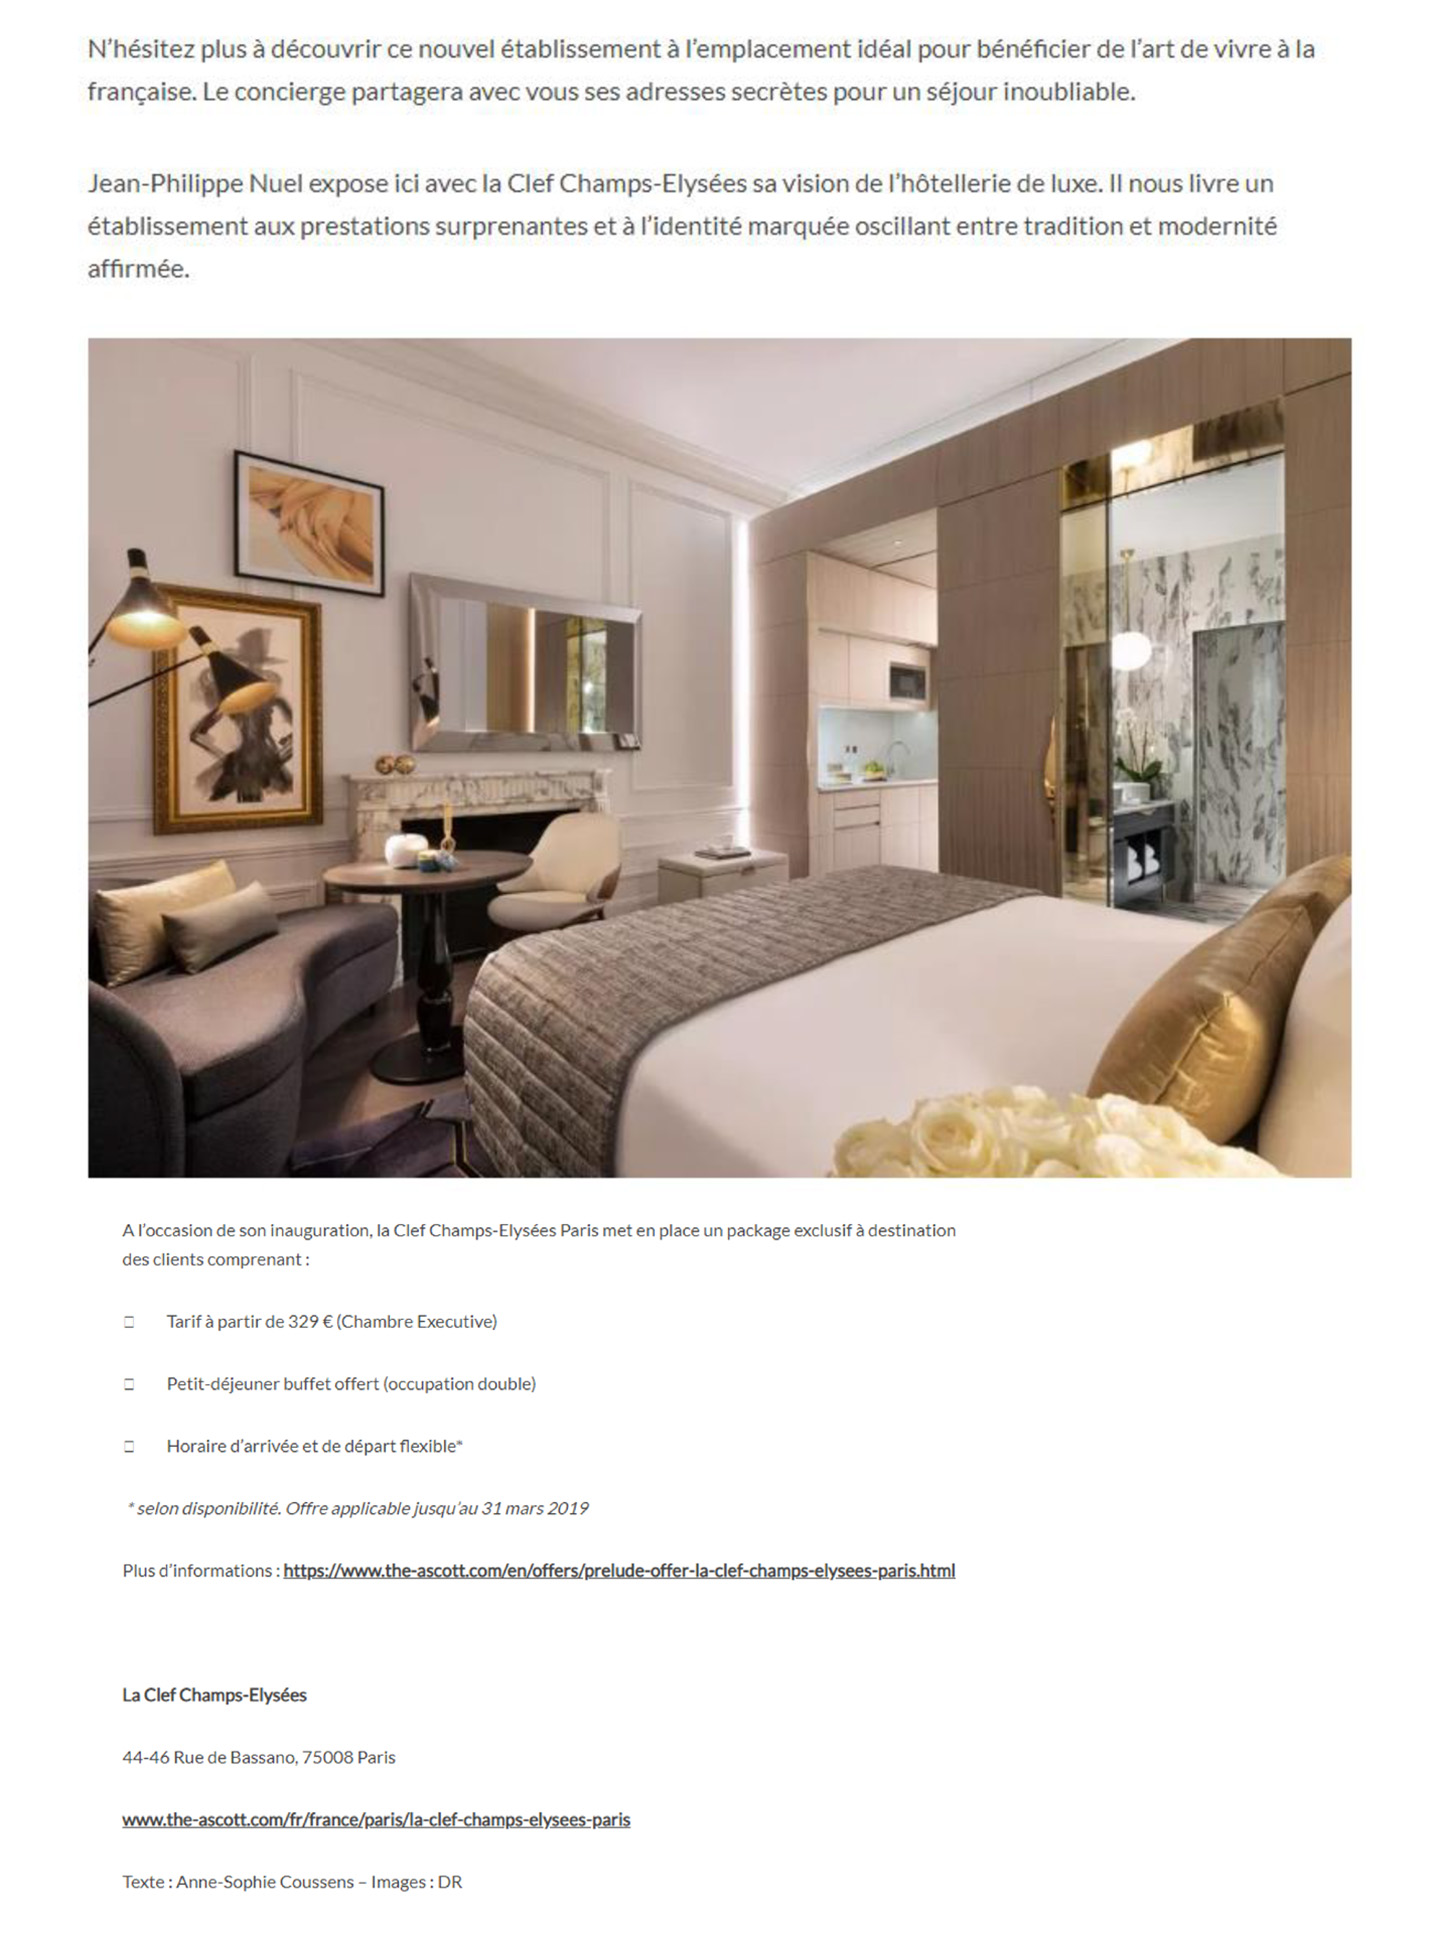 article sur l'hotel parisien 5 étoiles la clef champs elysées décoré et designé par le studio d'architecture d'intérieur jean-philippe nuel